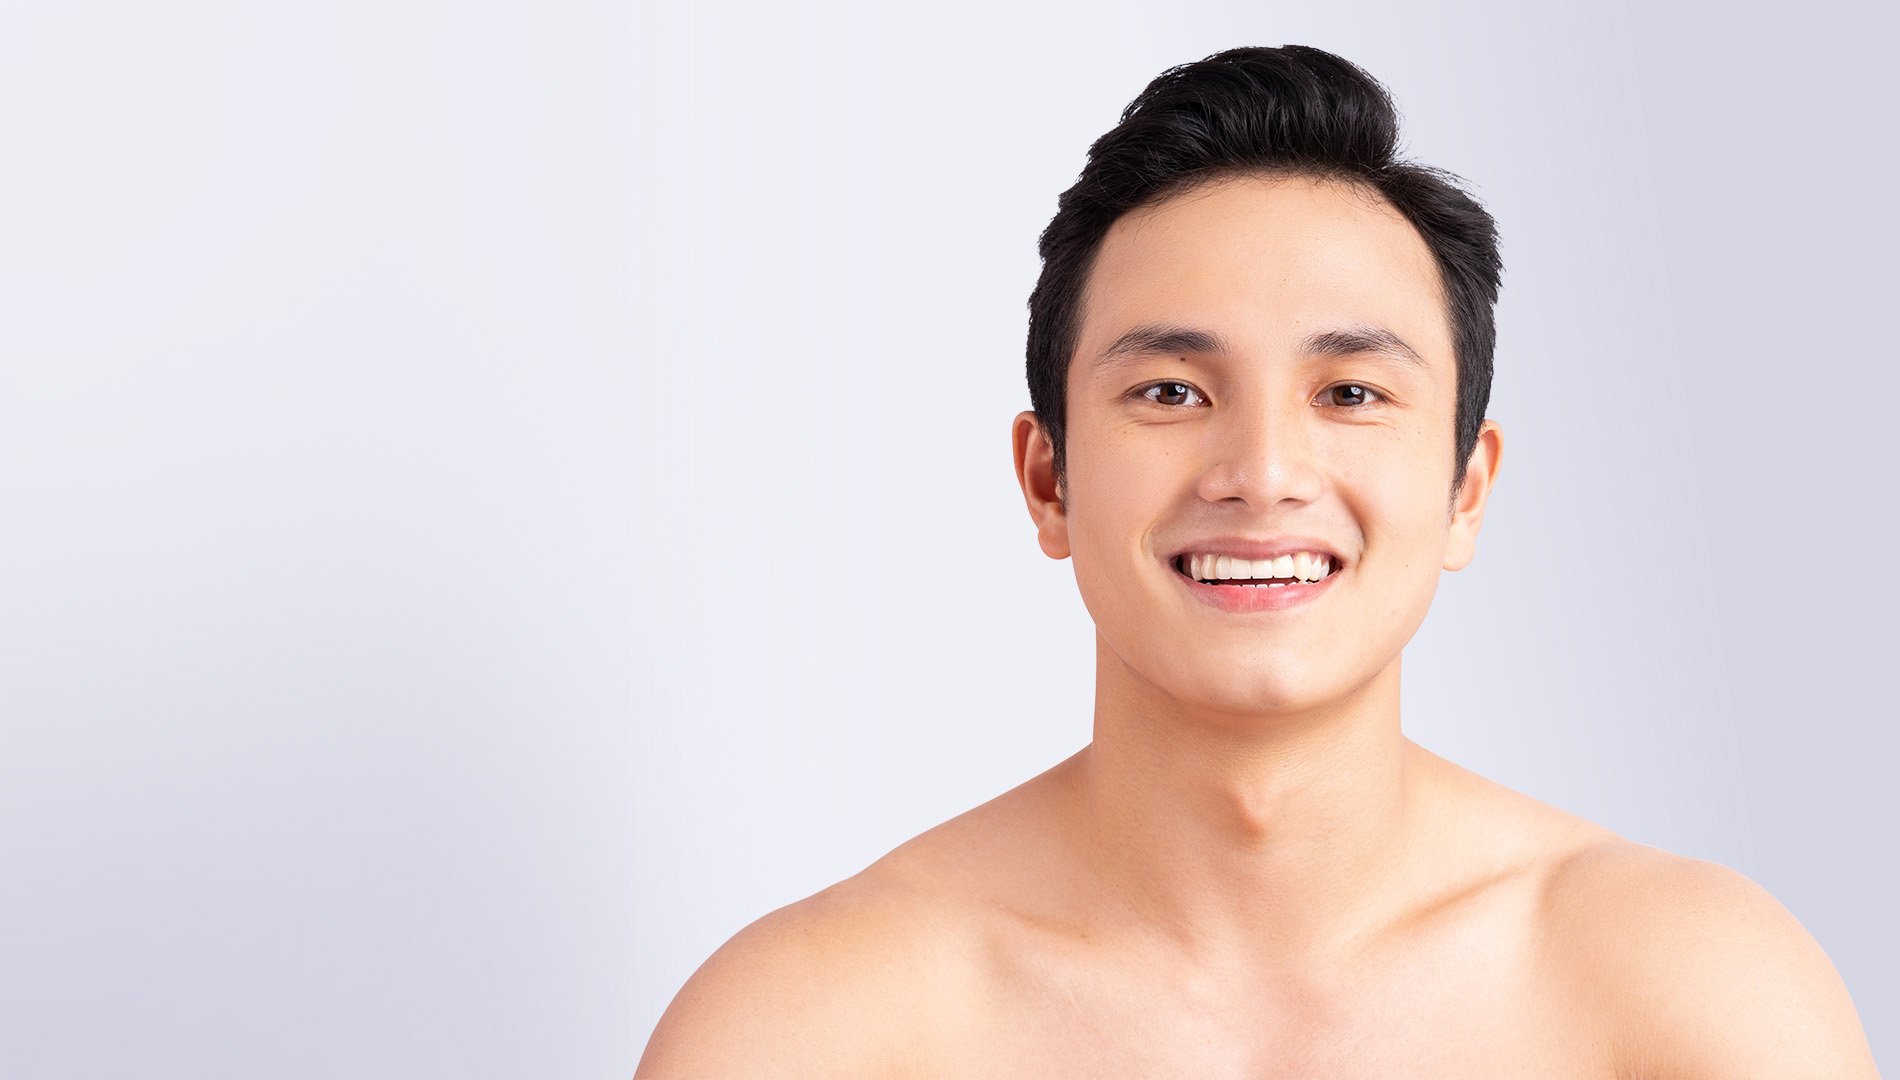 shirtless asian closeup smiling